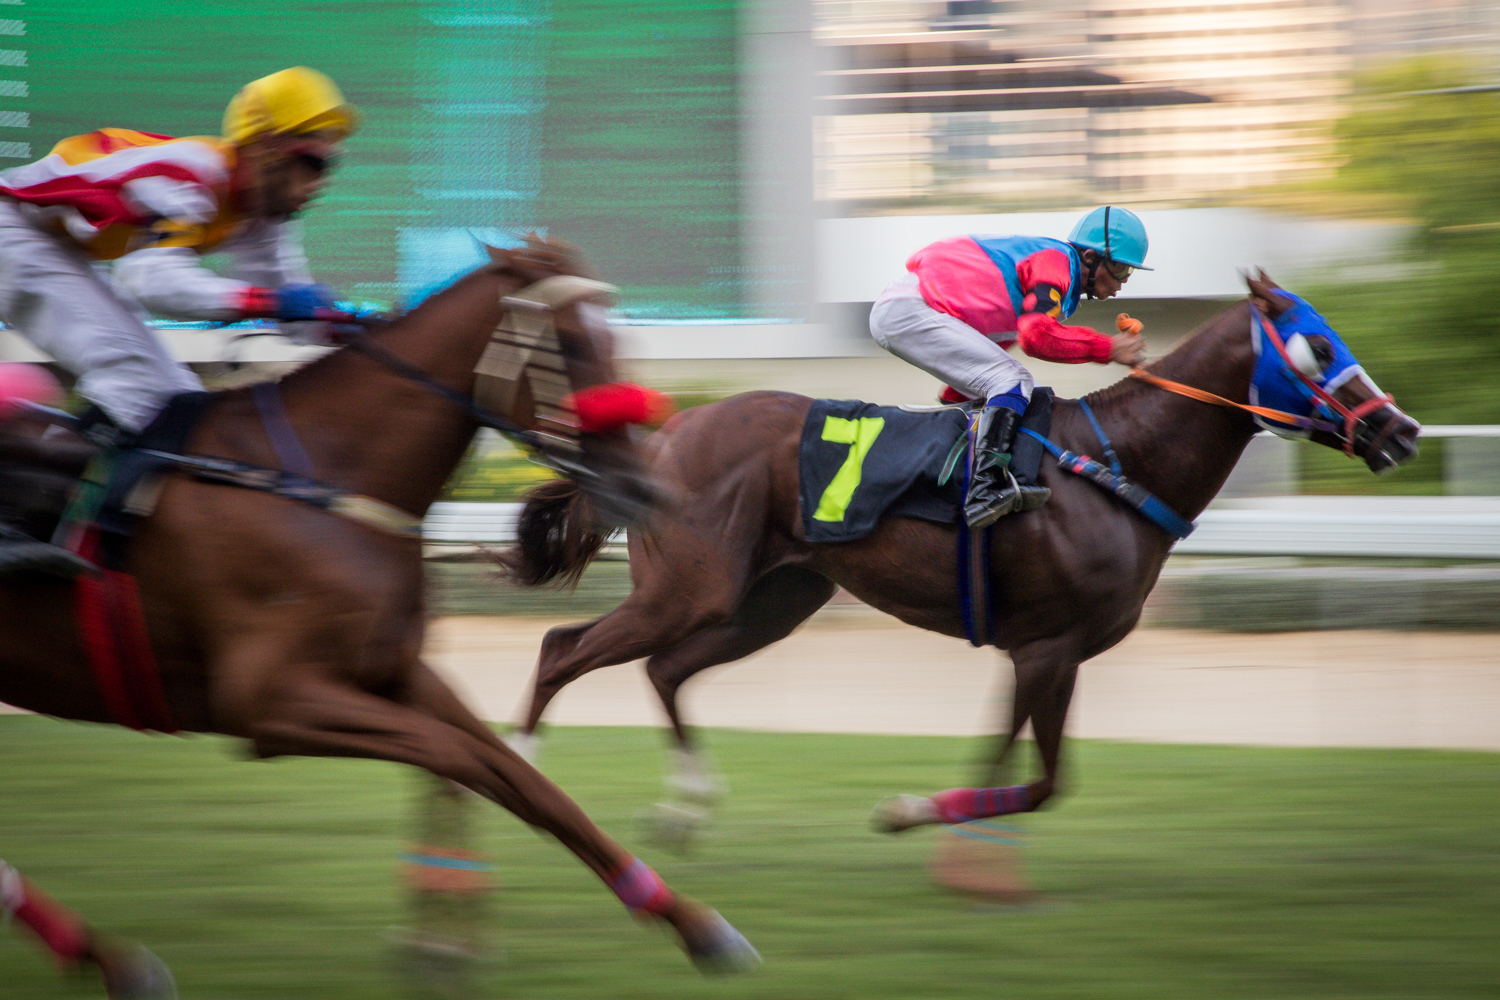 #สนามม้าราชกรีฑาสโมสร #สนามม้าฝรั่ง #Photoessay #Culture #แข่งม้า #Horseracing